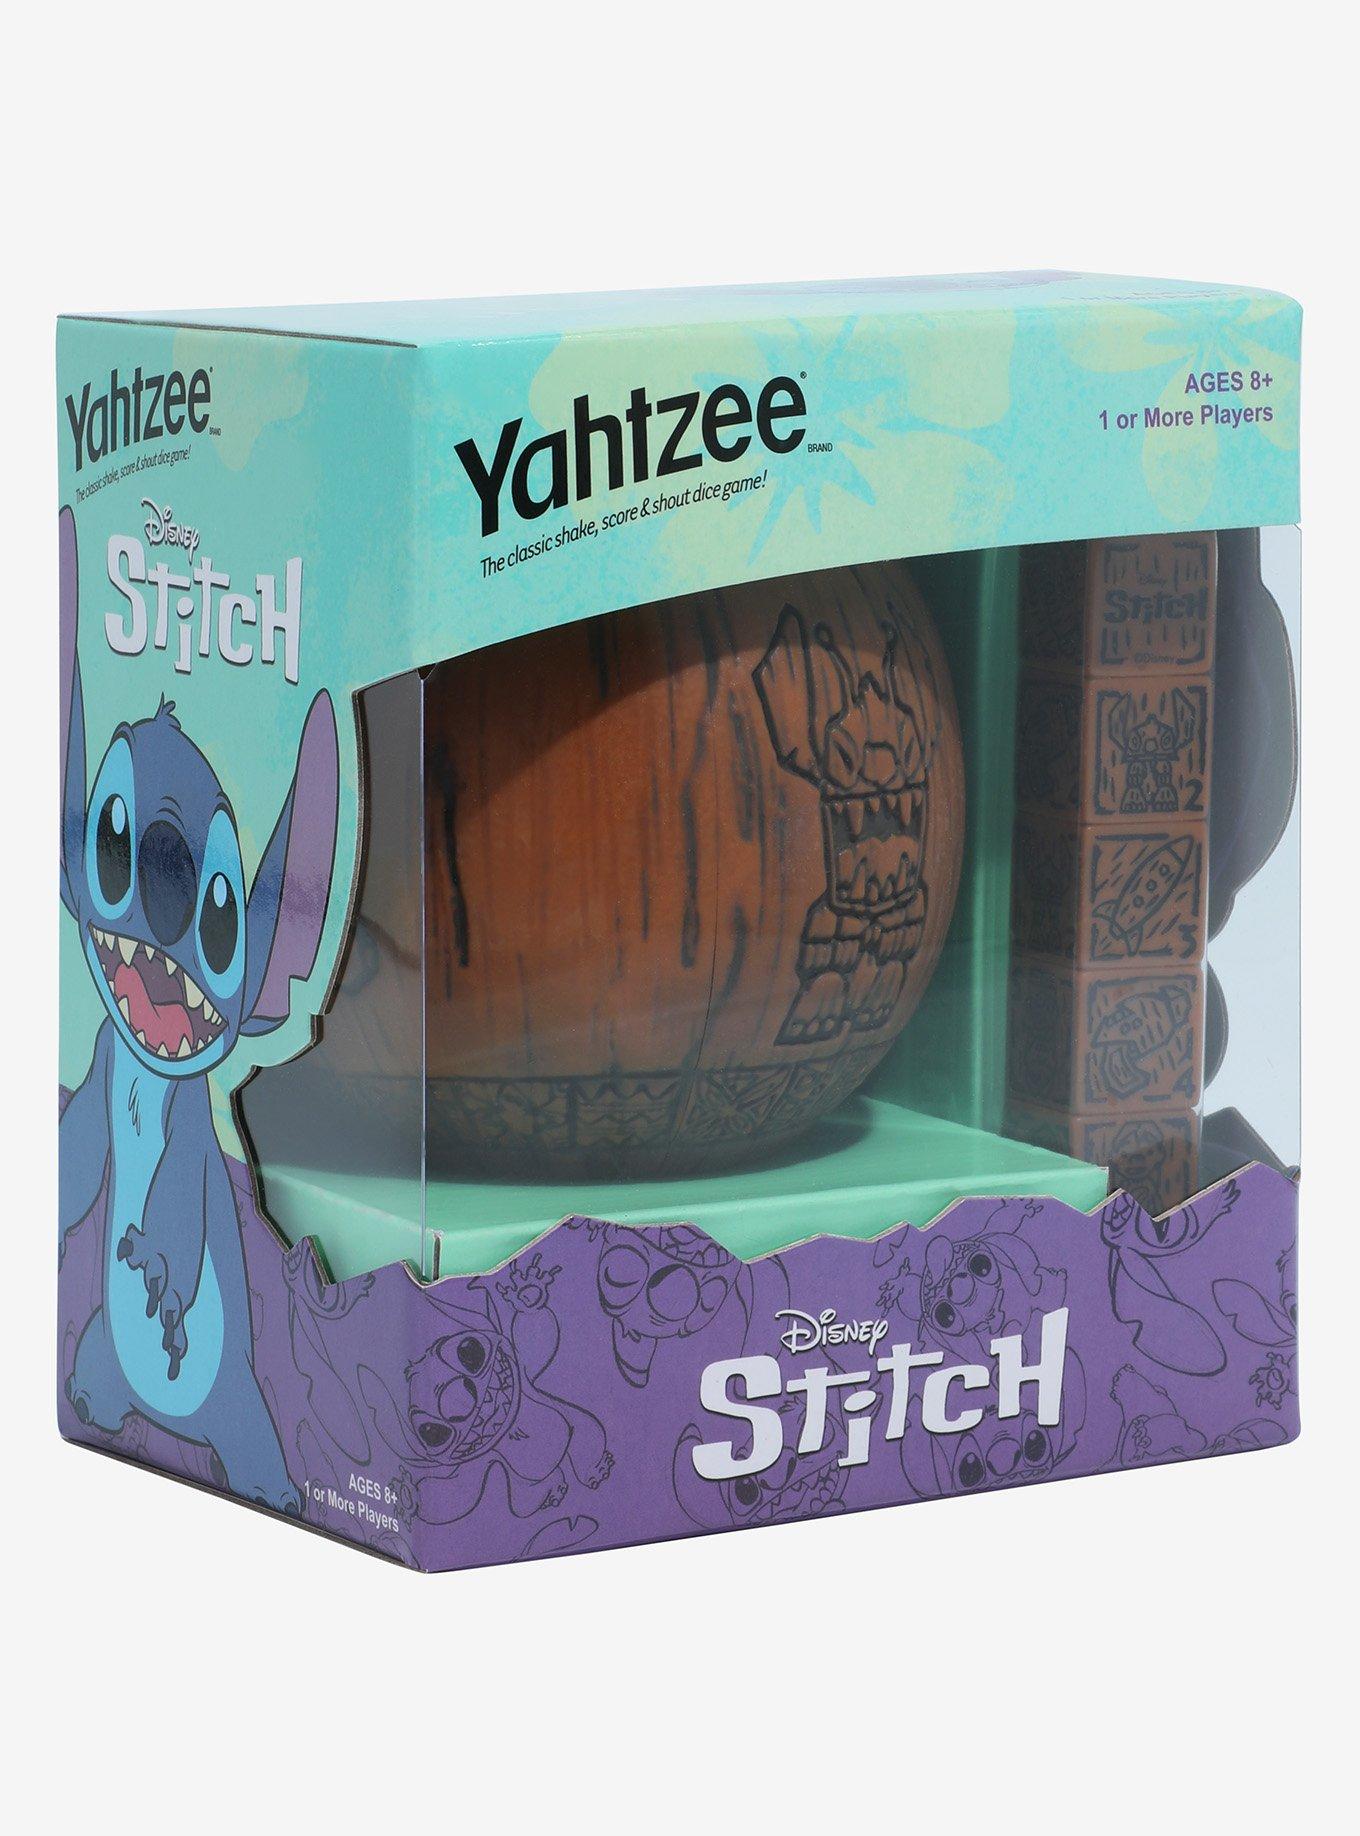 Disney Lilo & Stitch Yahtzee Game